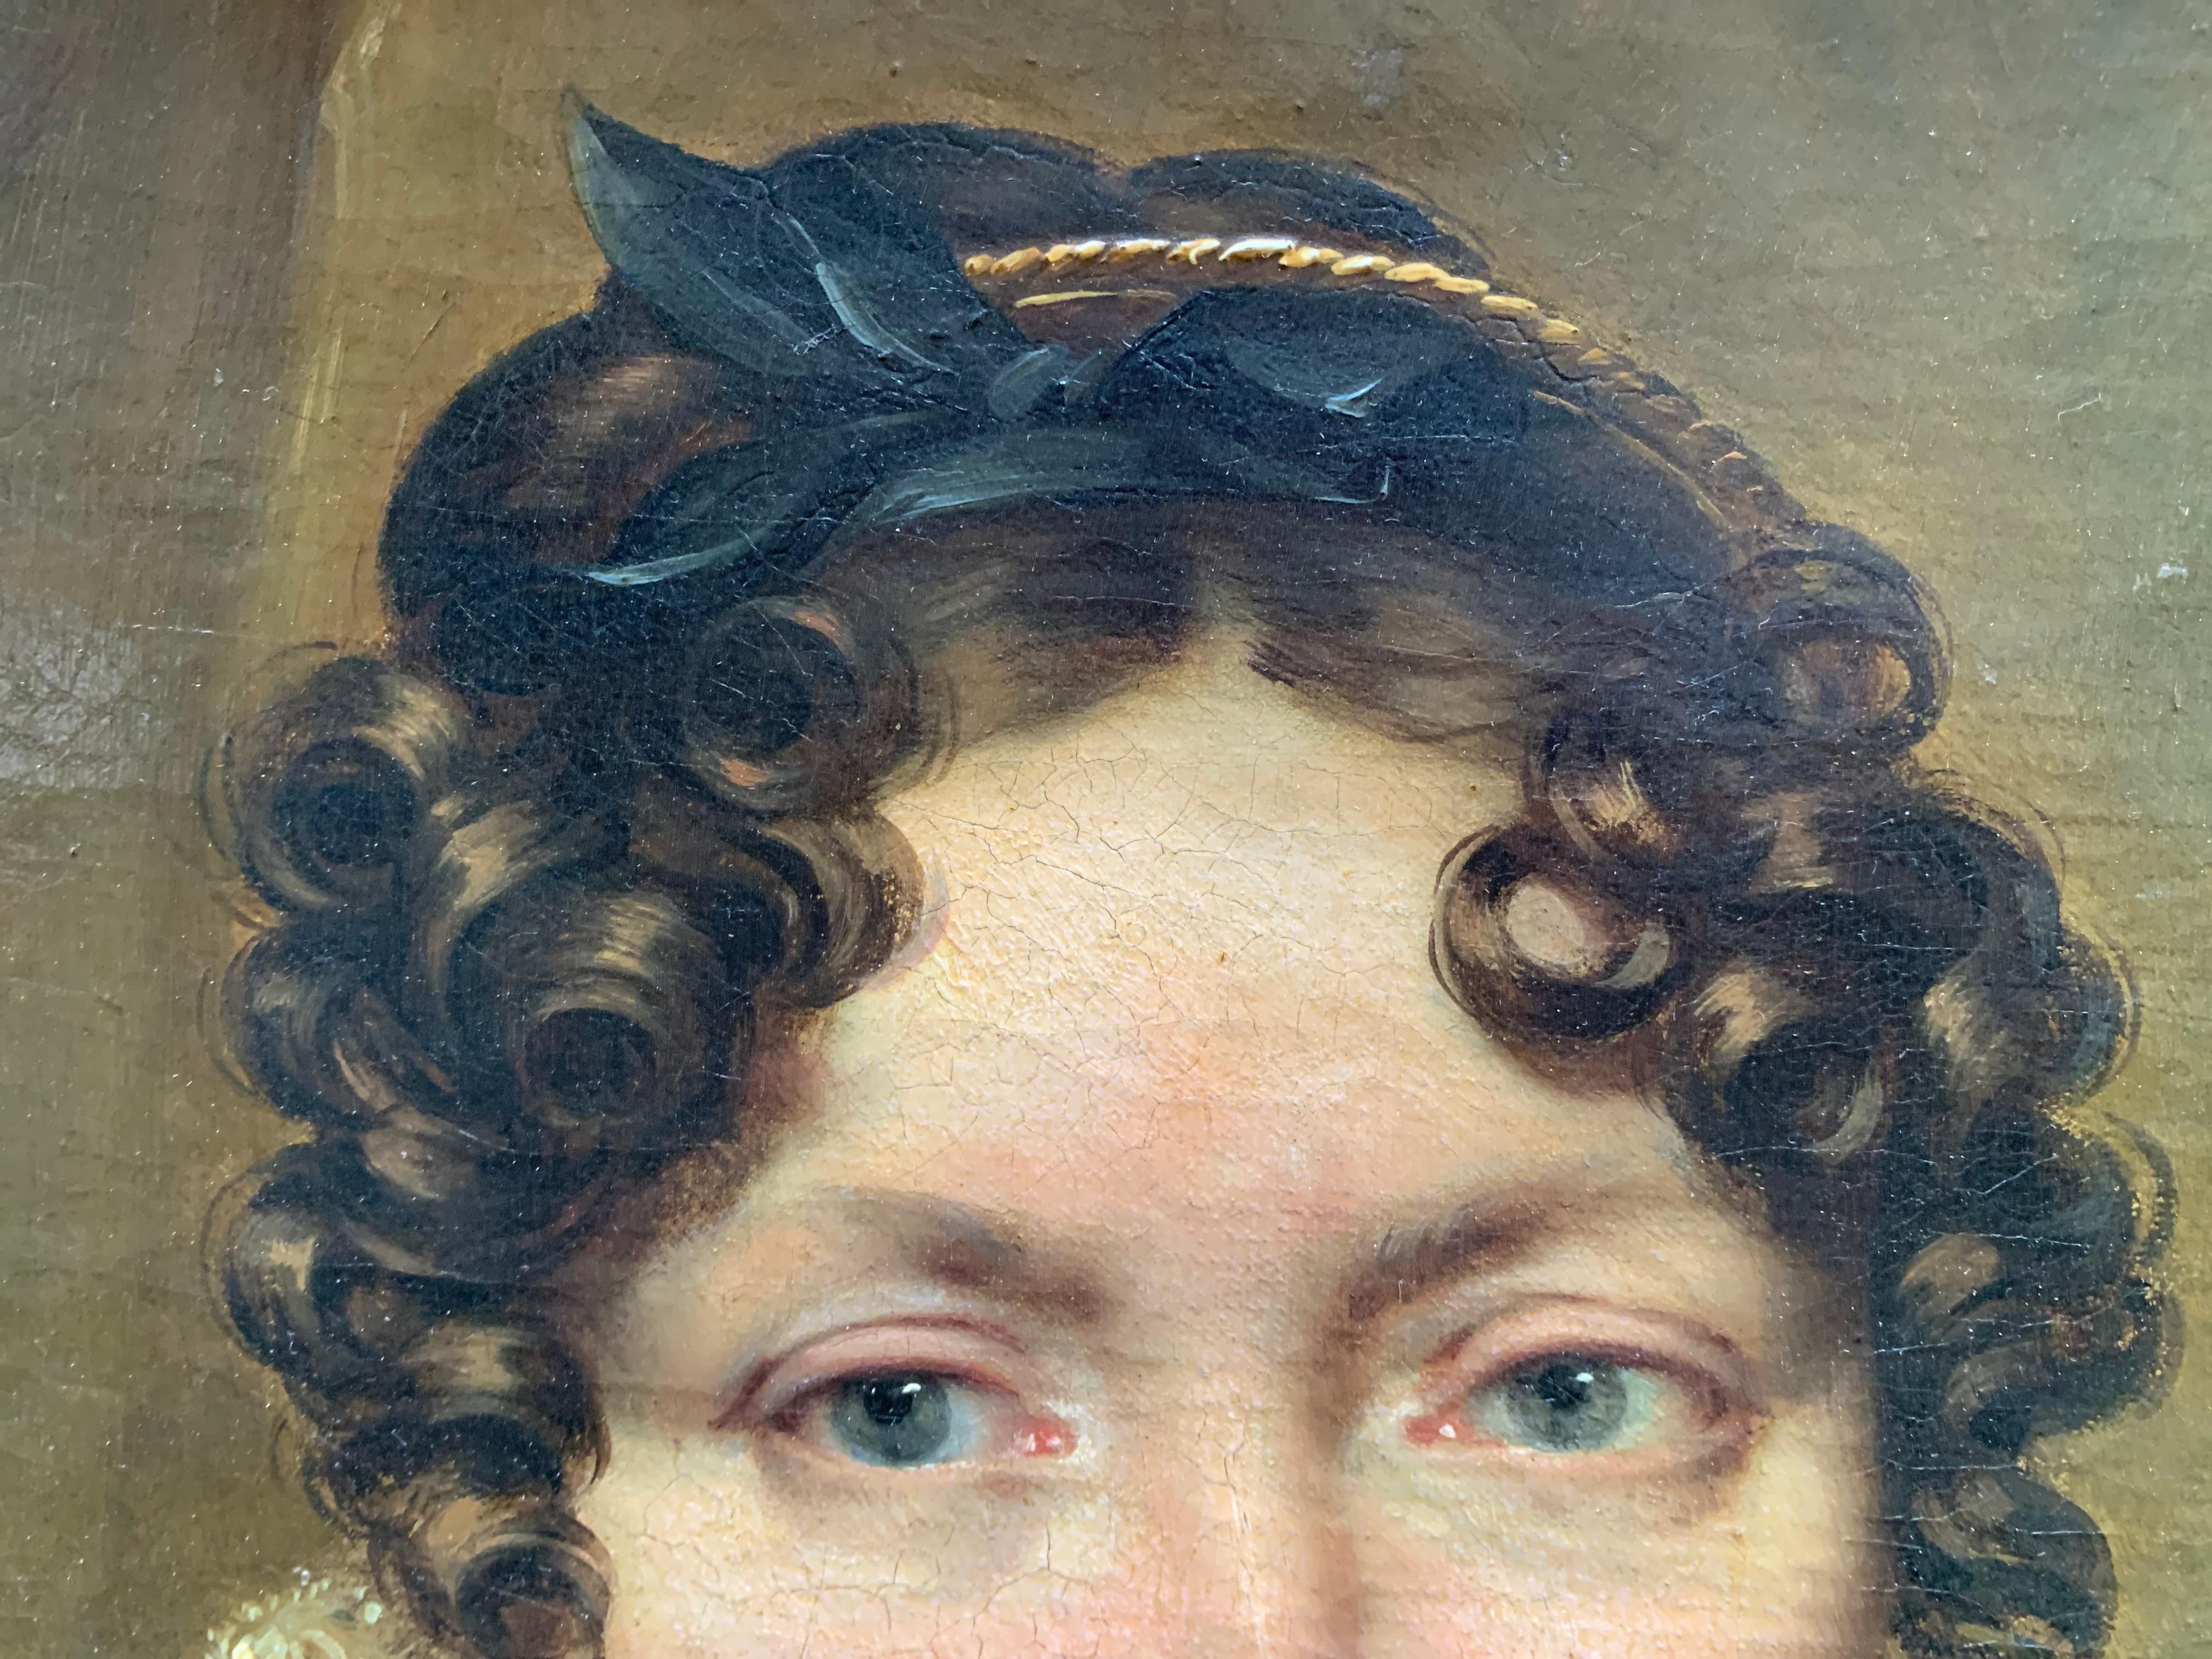 Um 1820

Porträt einer Frau.

Léon Cogniet (1794-1880, Paris), zugeschrieben.

Französische Schule des 19. Jahrhunderts.

Technik: Öl auf Leinwand.

Abmessungen: 70cm x 61cm

Holzrahmen aus dem 20. Jahrhundert.

Auf dem Holzrahmen ist eine alte